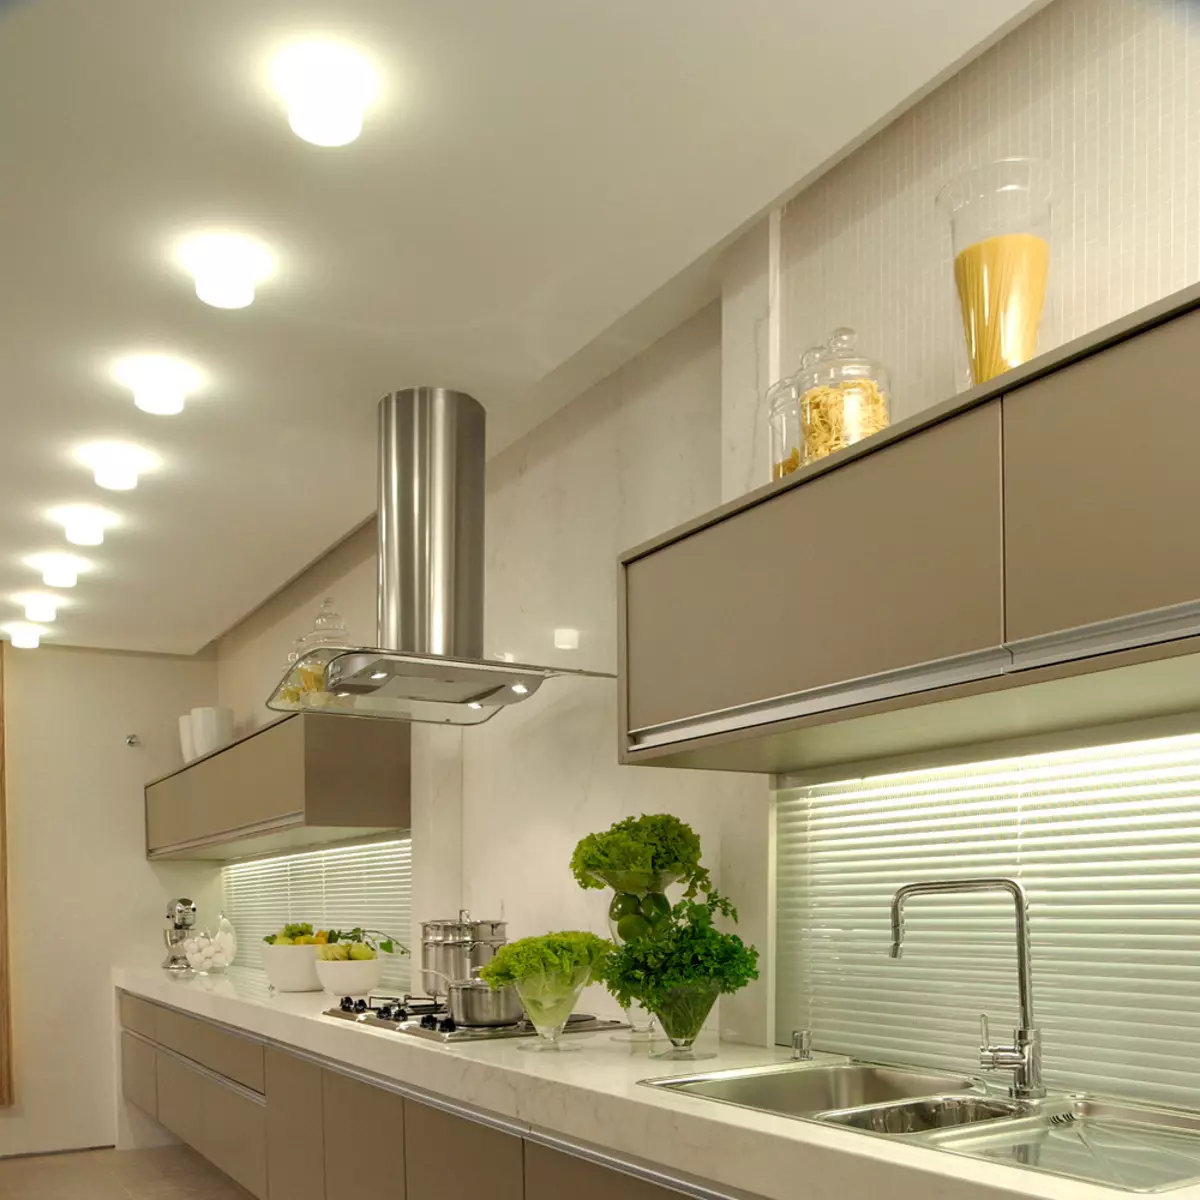 Virtuvės dizainas (179 nuotraukos): gražios virtuvės interjero idėjos bute, paprasti virtuvės dizaino parinktys. Kaip padaryti registraciją įdomu ir stilingu? Madingi dizaino sprendimai 186_128